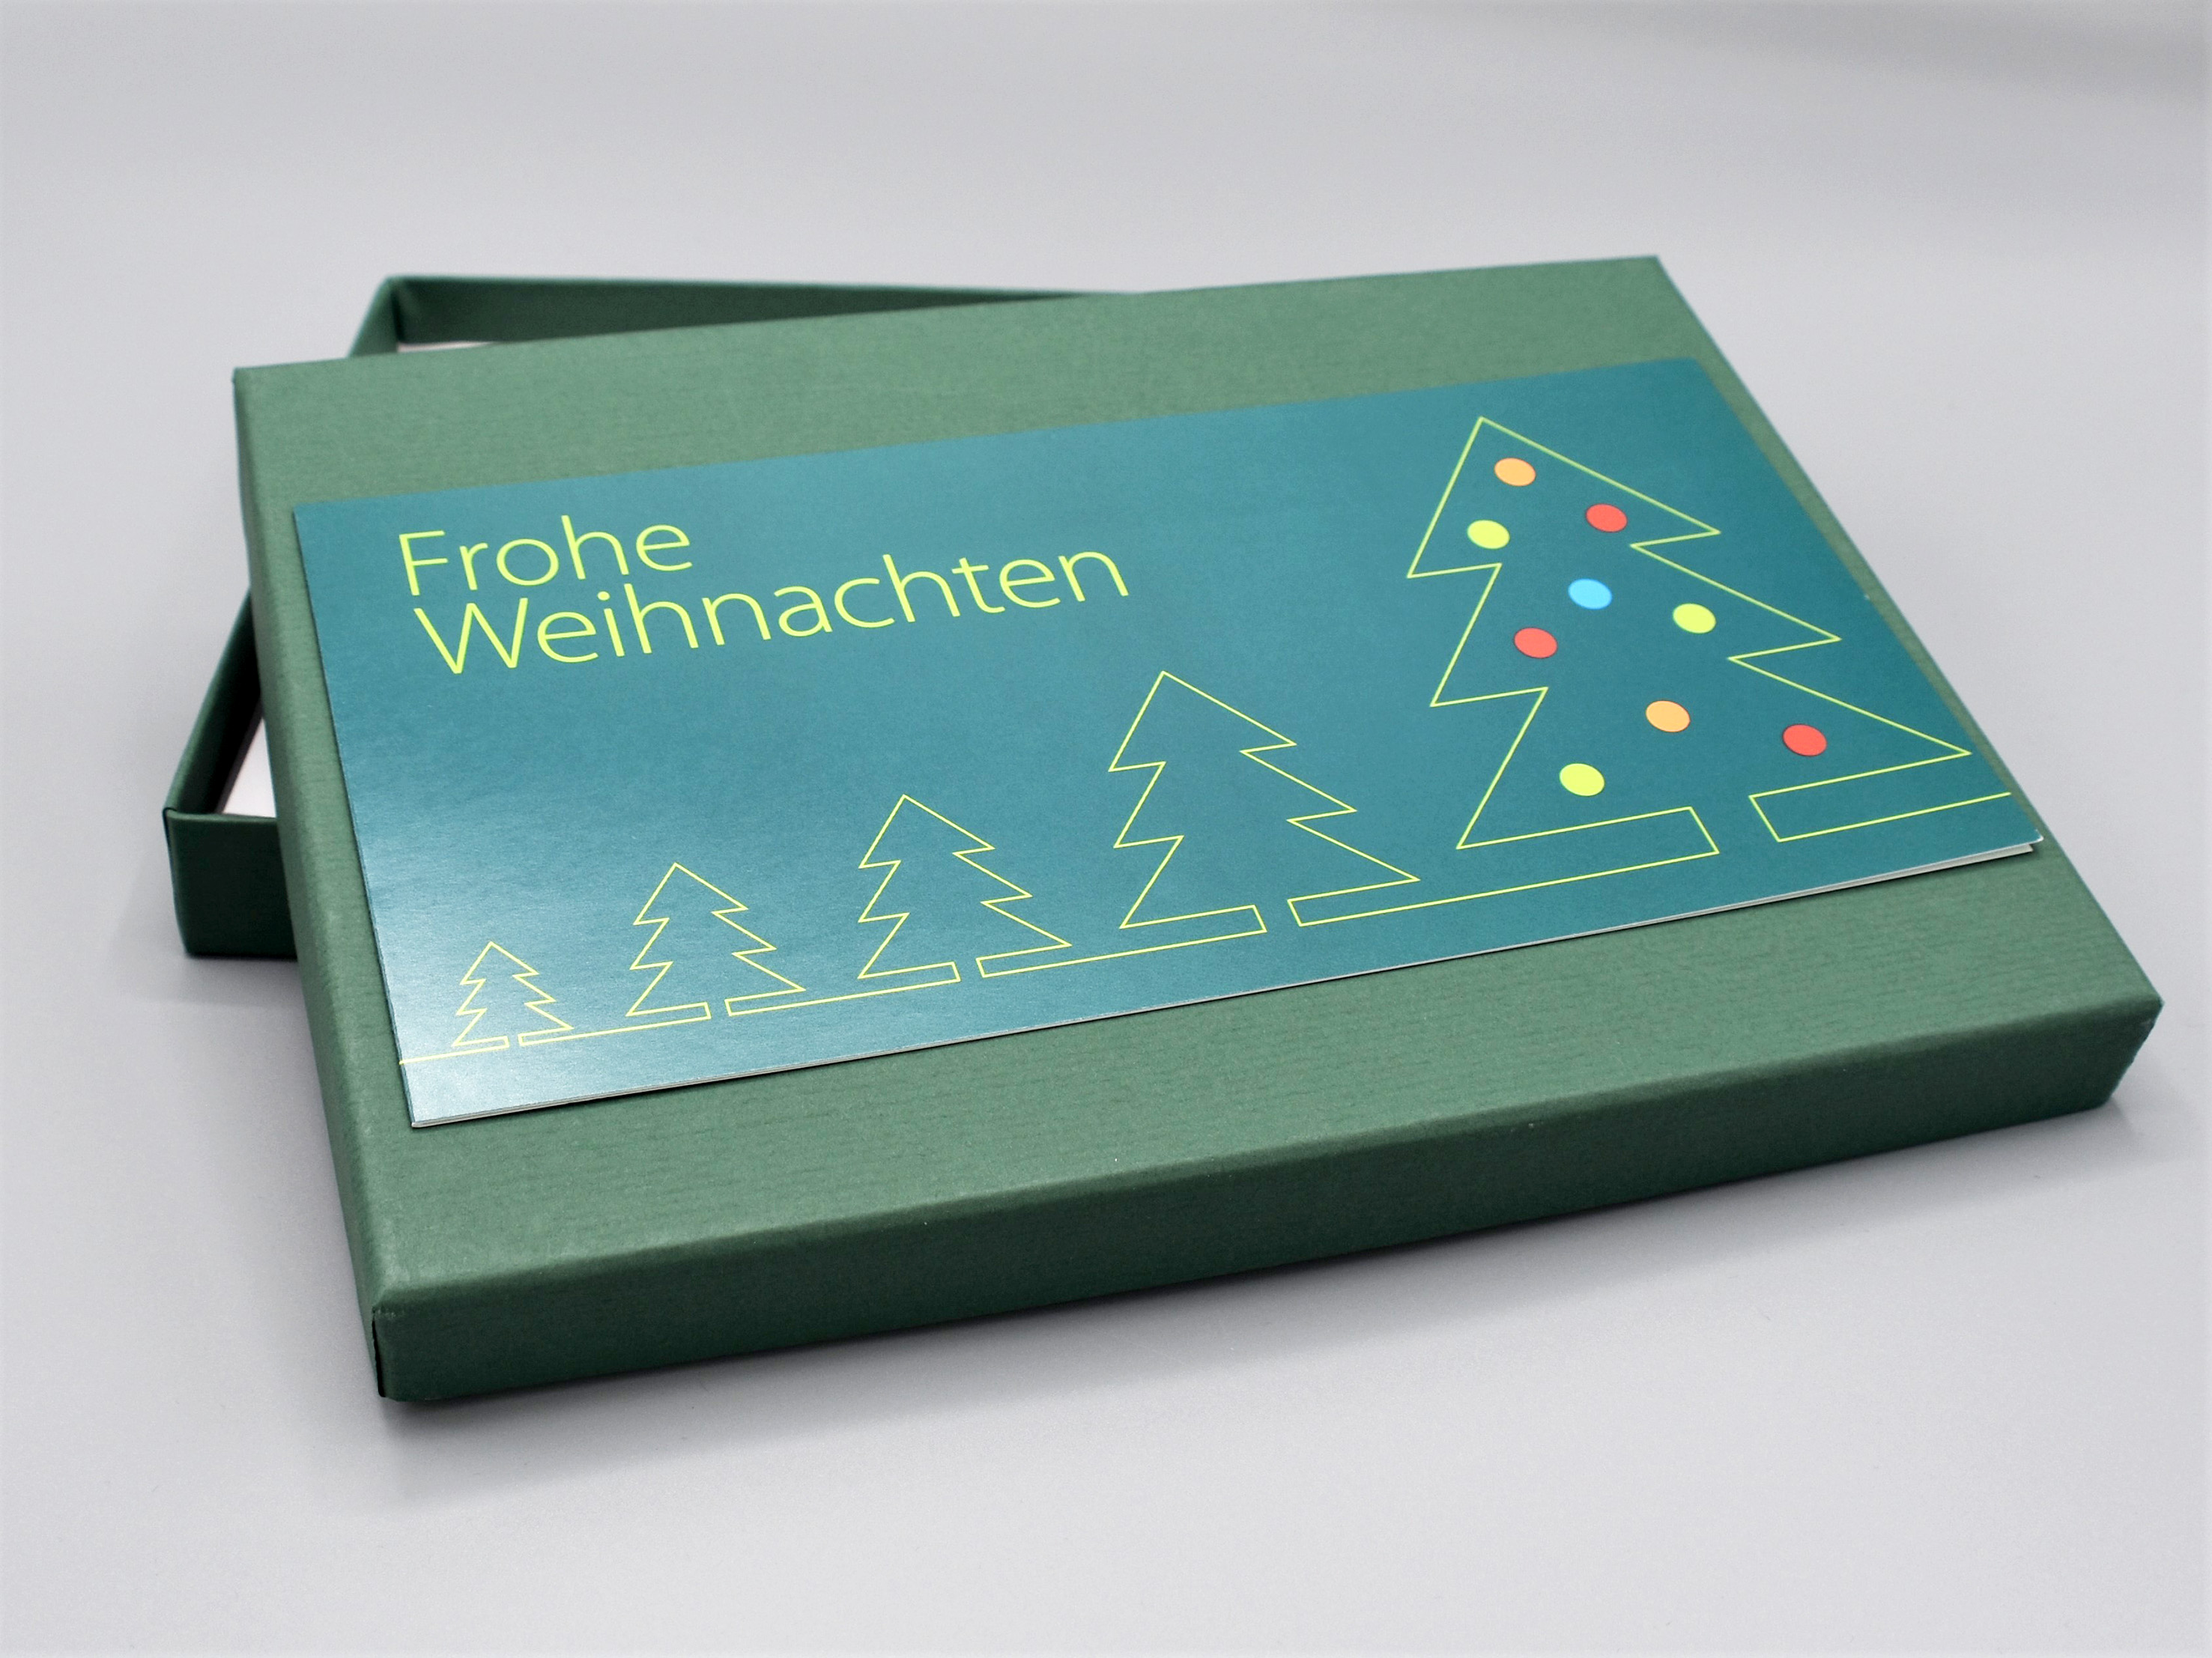 artoz-pure-box-din-A5_dunkelgr-n_racing-green_Weihnachtskarte_Frohe-Weihnachten_grusskarten-designKnqE6vKGUlxtT